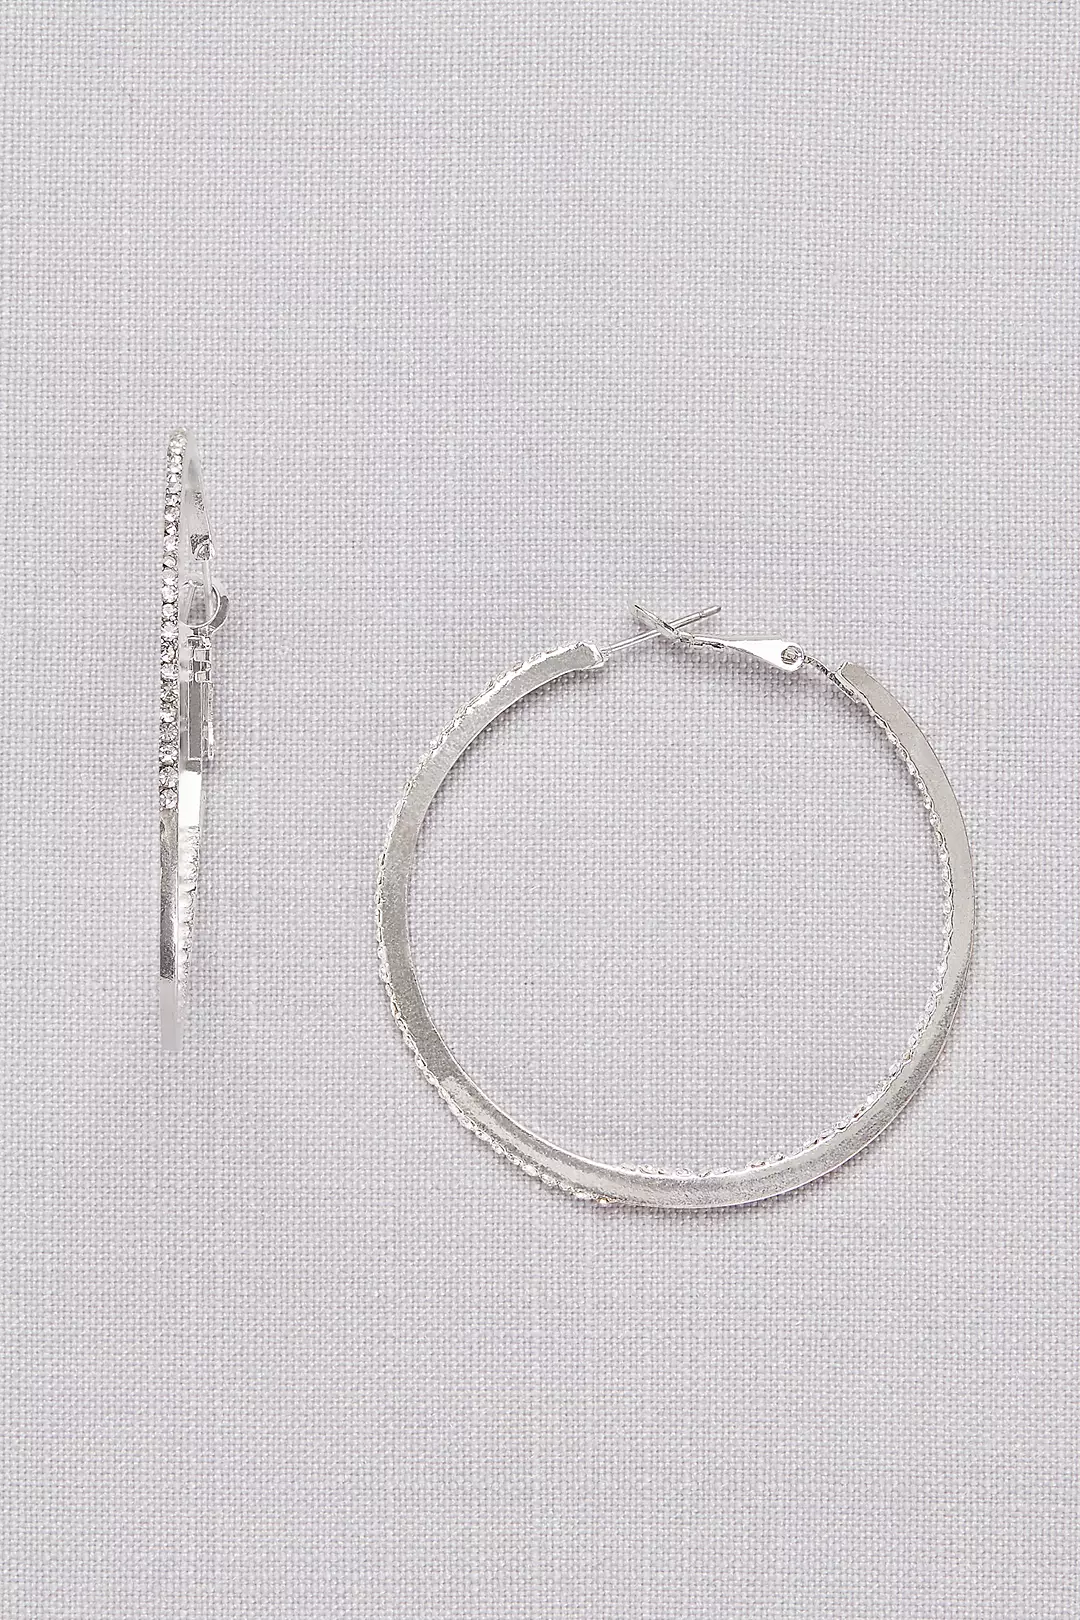 Crystal-Traced Hoop Earrings Image